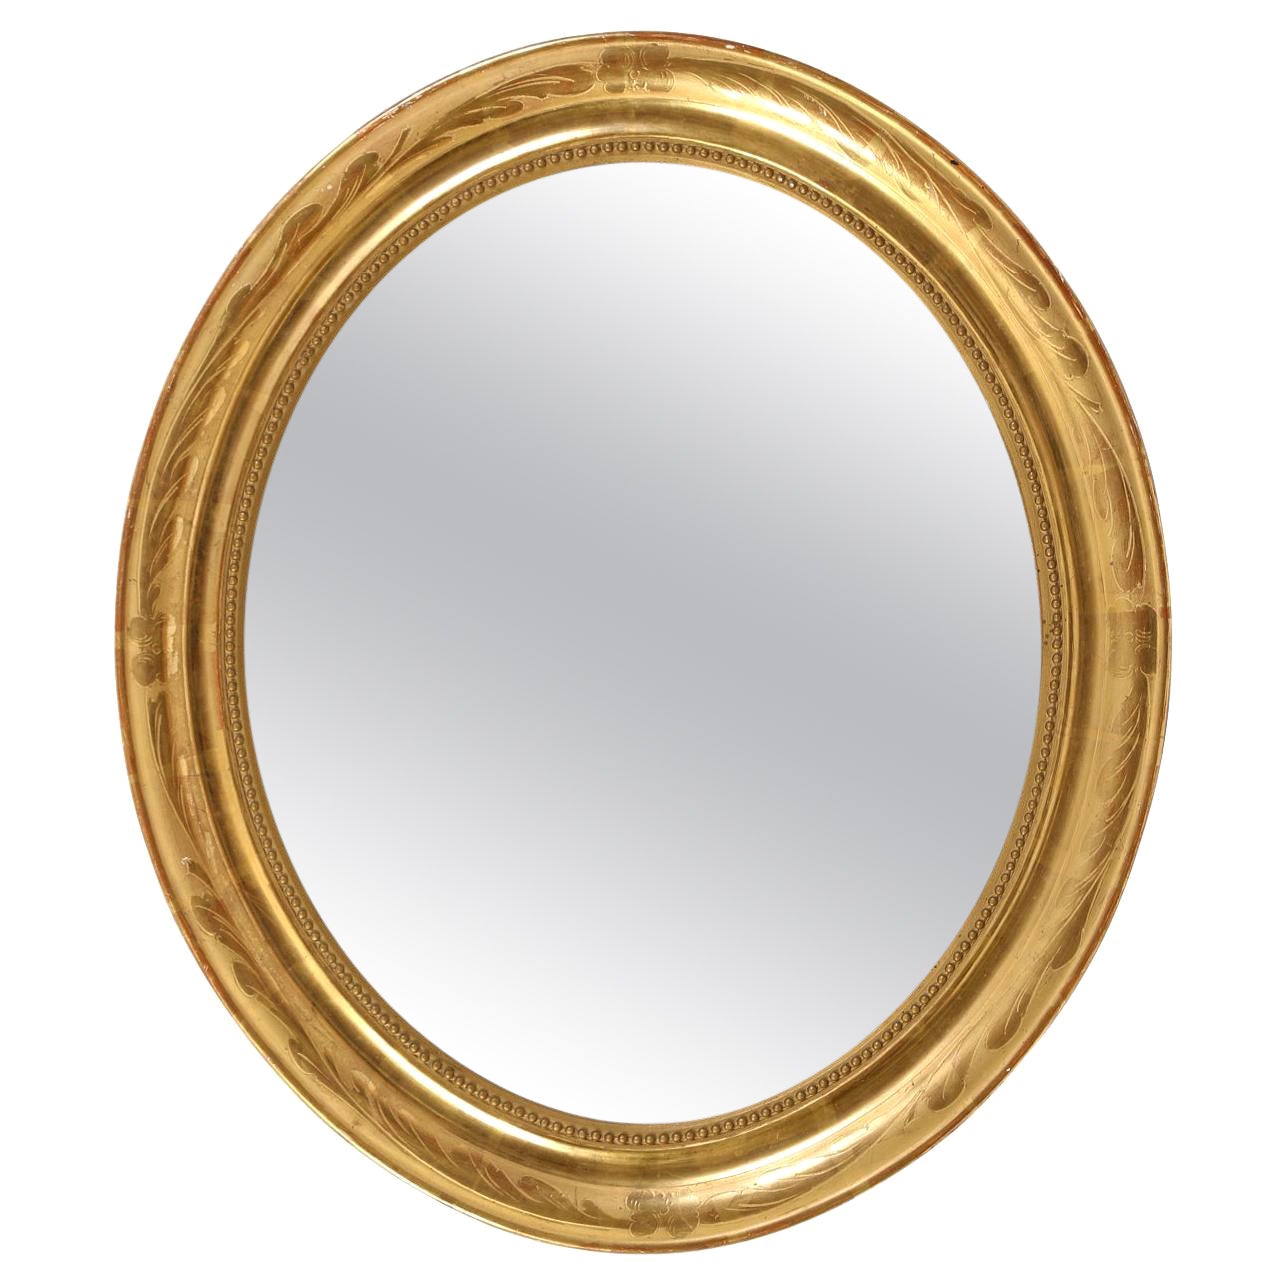 Miroir ovale en bois doré avec moulures intérieures en perles